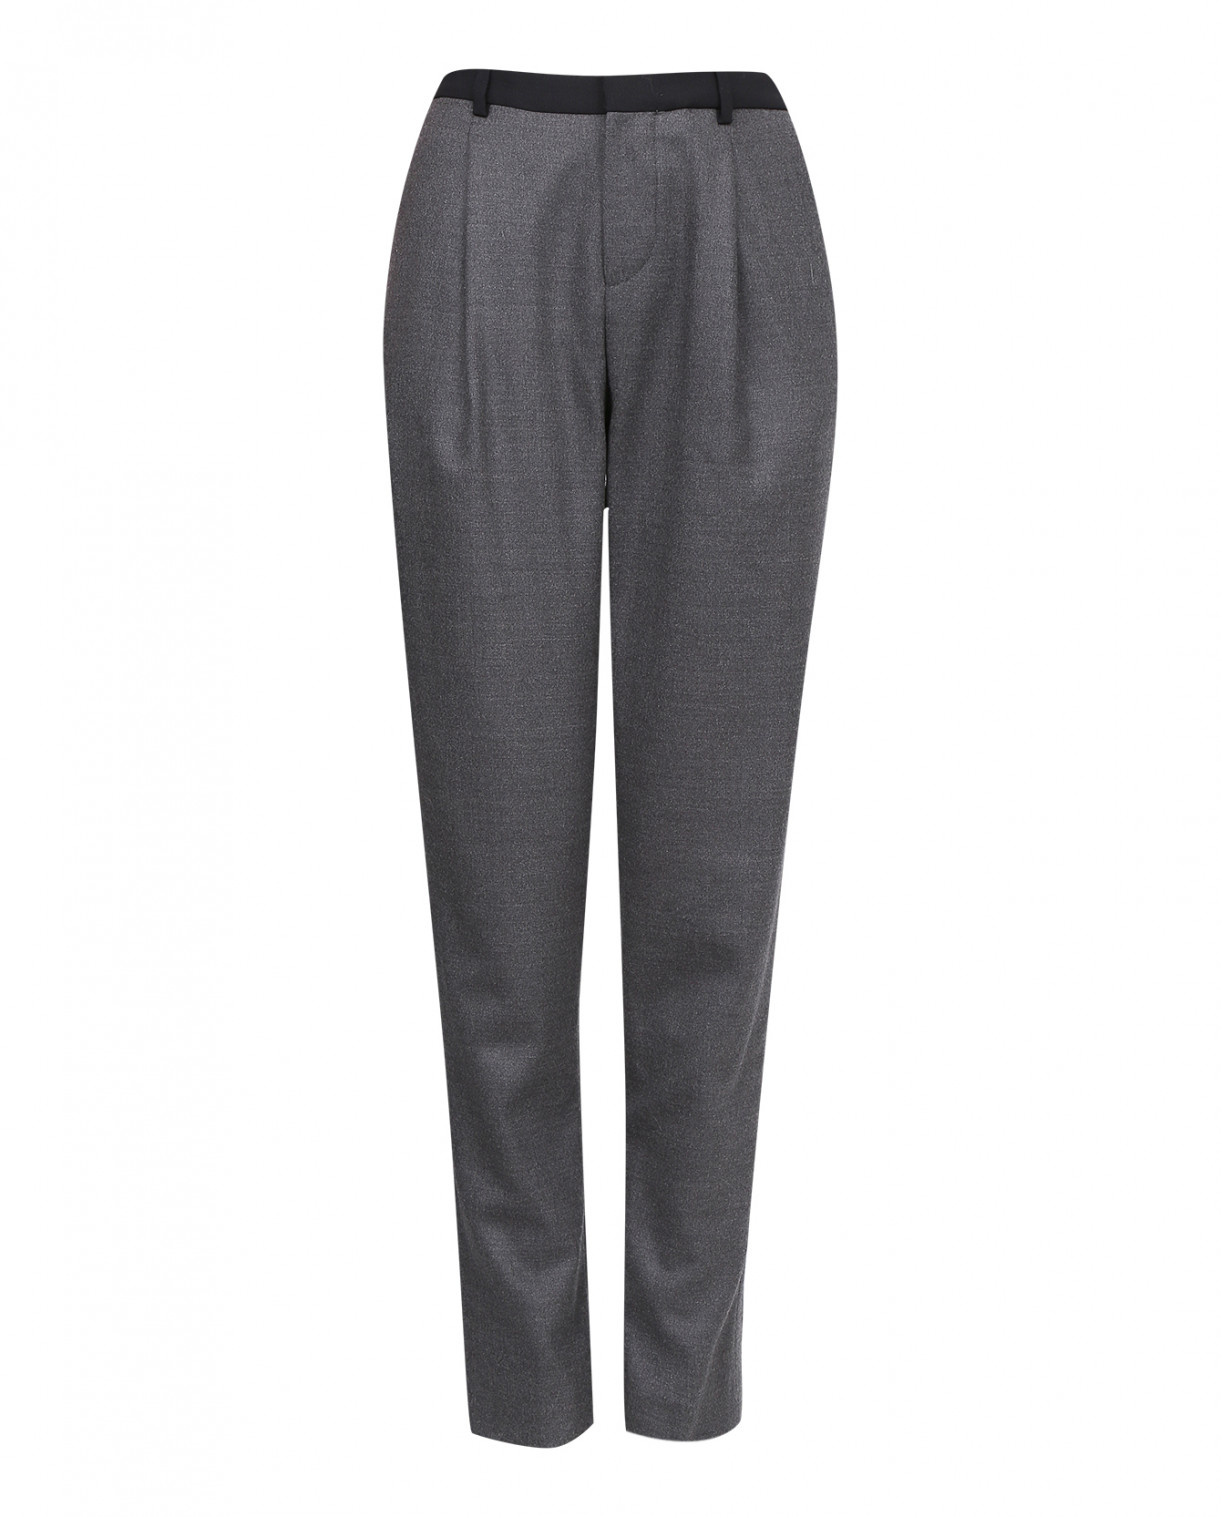 Классические брюки прямого фасона из шерсти с контрастной отделкой Chloé Stora  –  Общий вид  – Цвет:  Серый